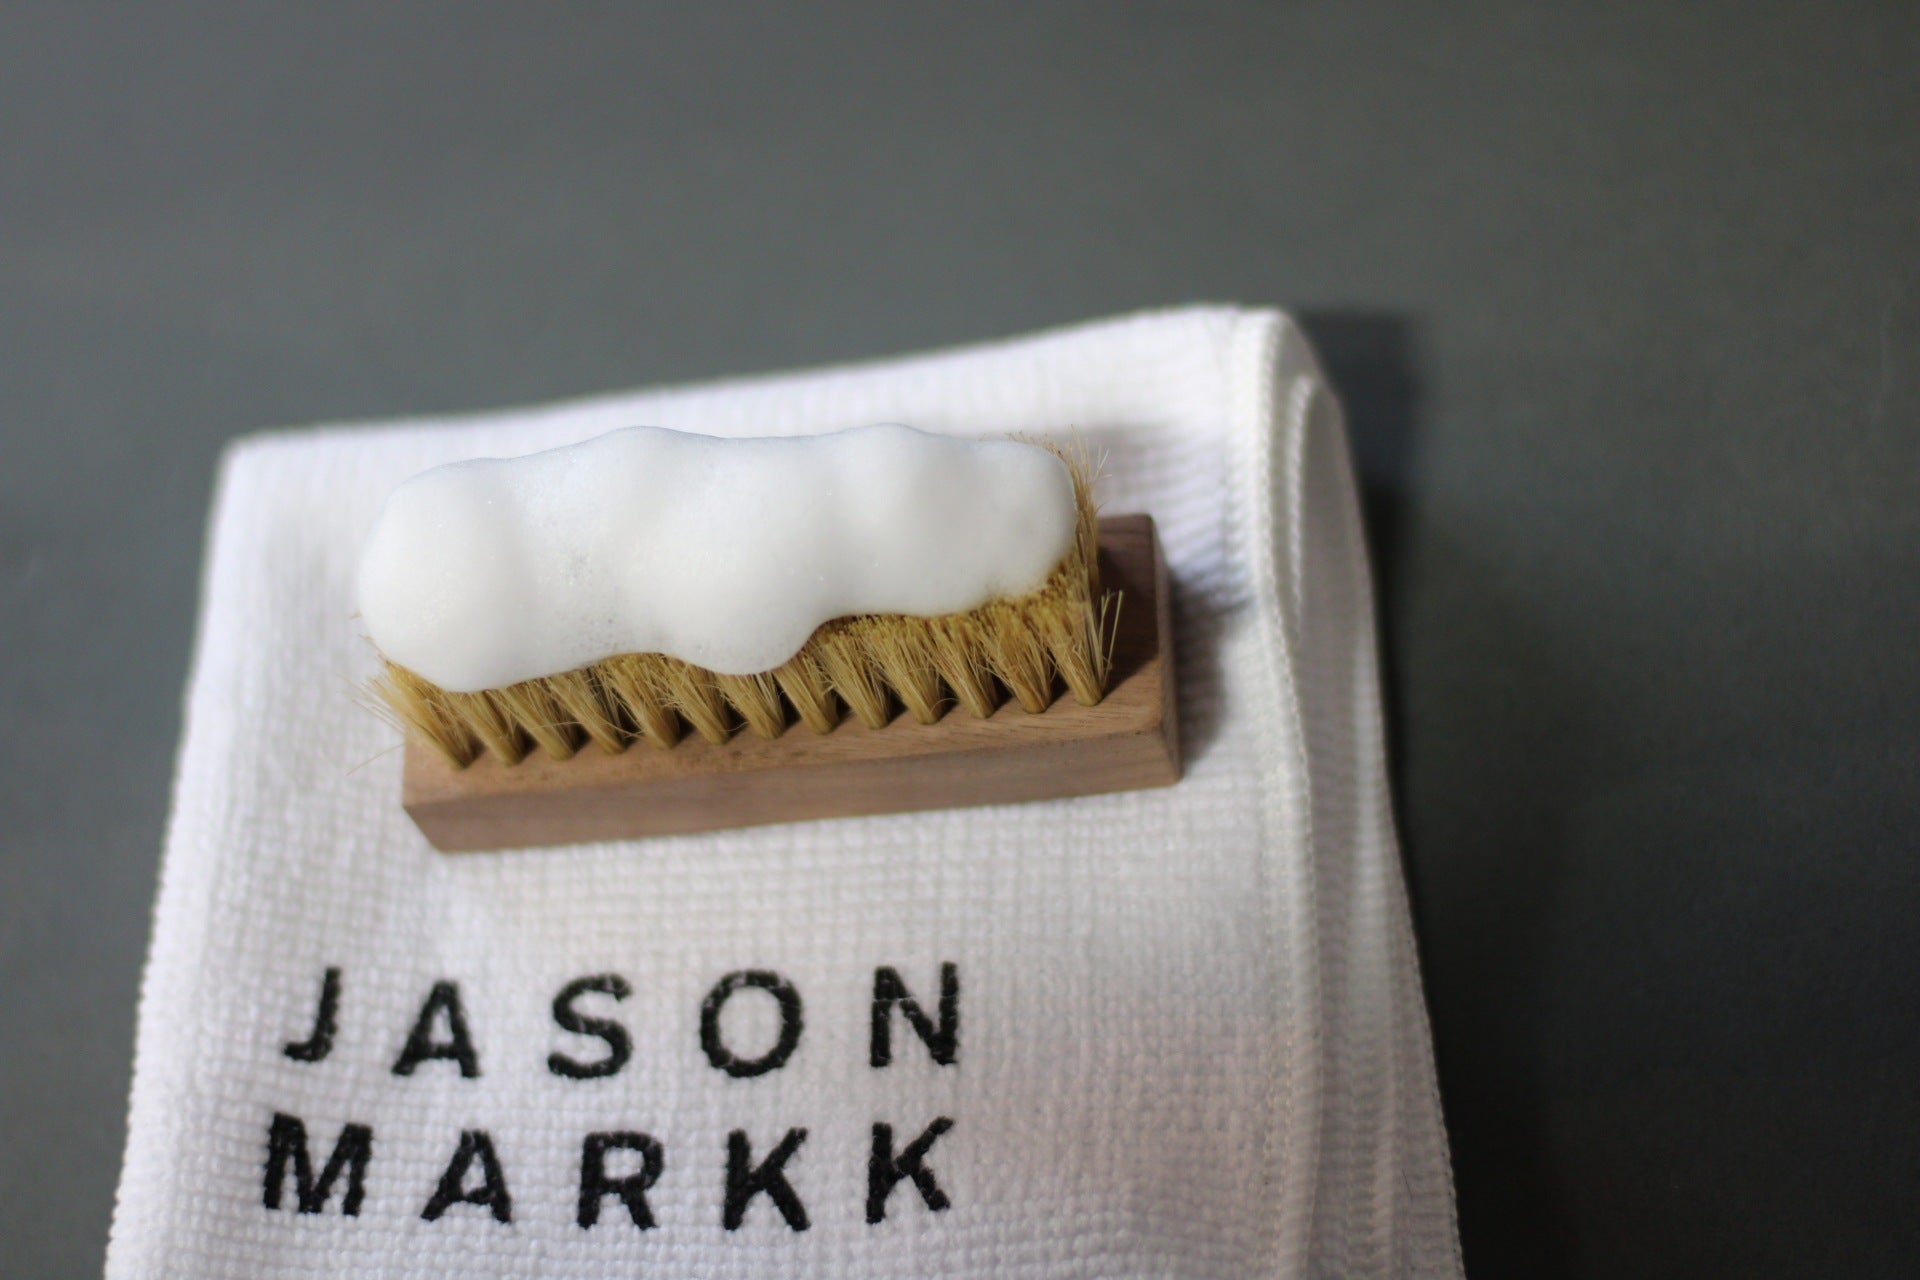 Jason Markk, Limited Edition Field Kit